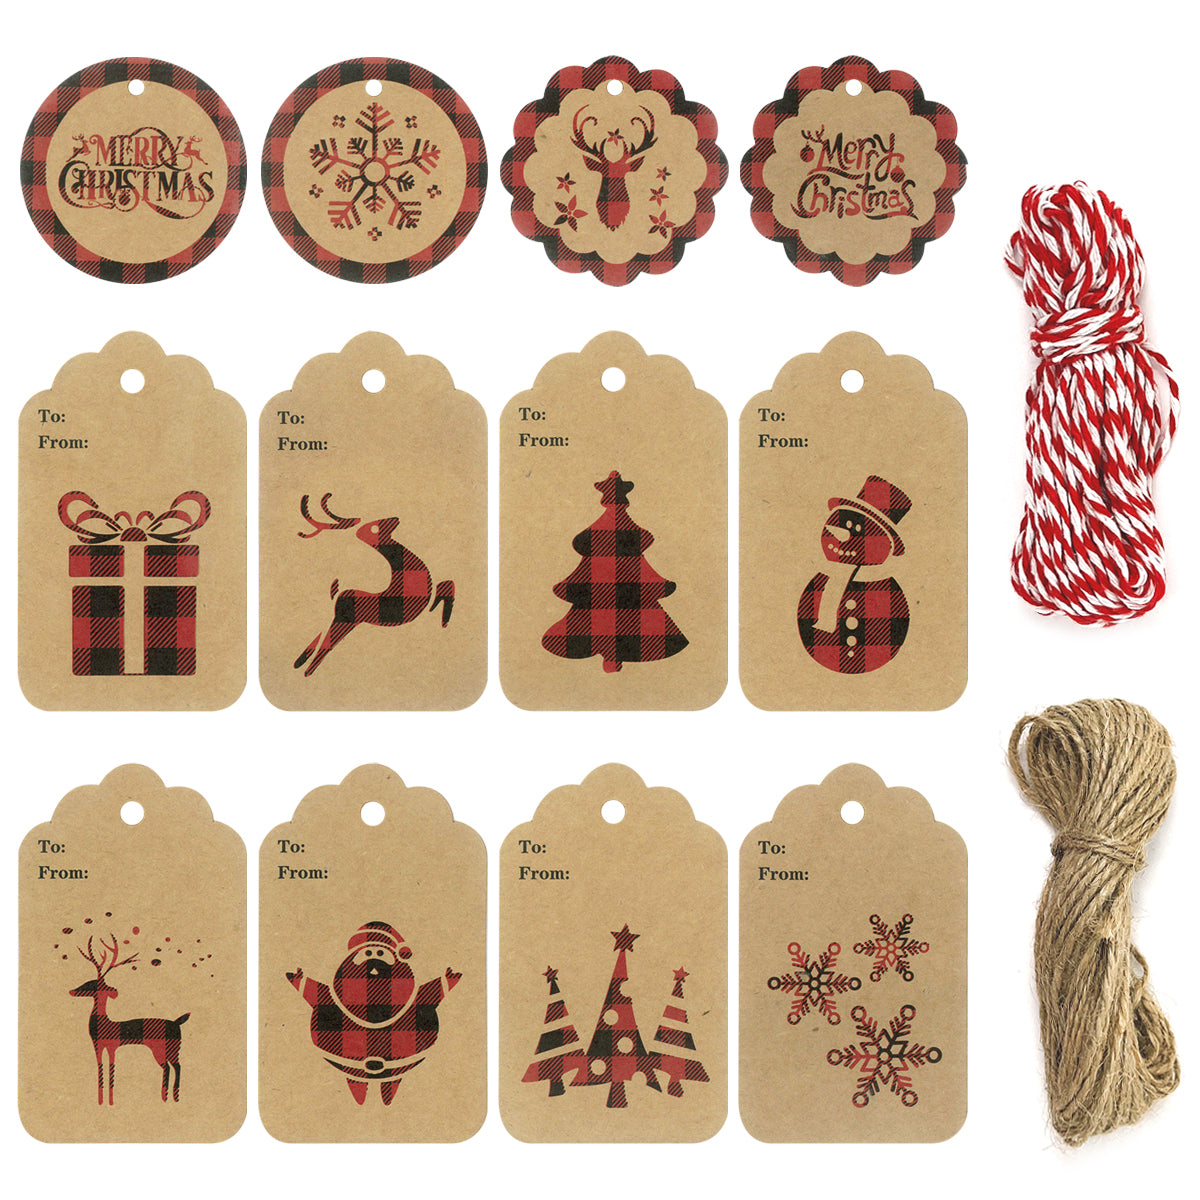 Christmas Gift Tags, Present Tags, Christmas Labels, Christmas Goodie Bag  Tags, Gift Tags, Christmas Party Tags, Gift Tags for Christmas 